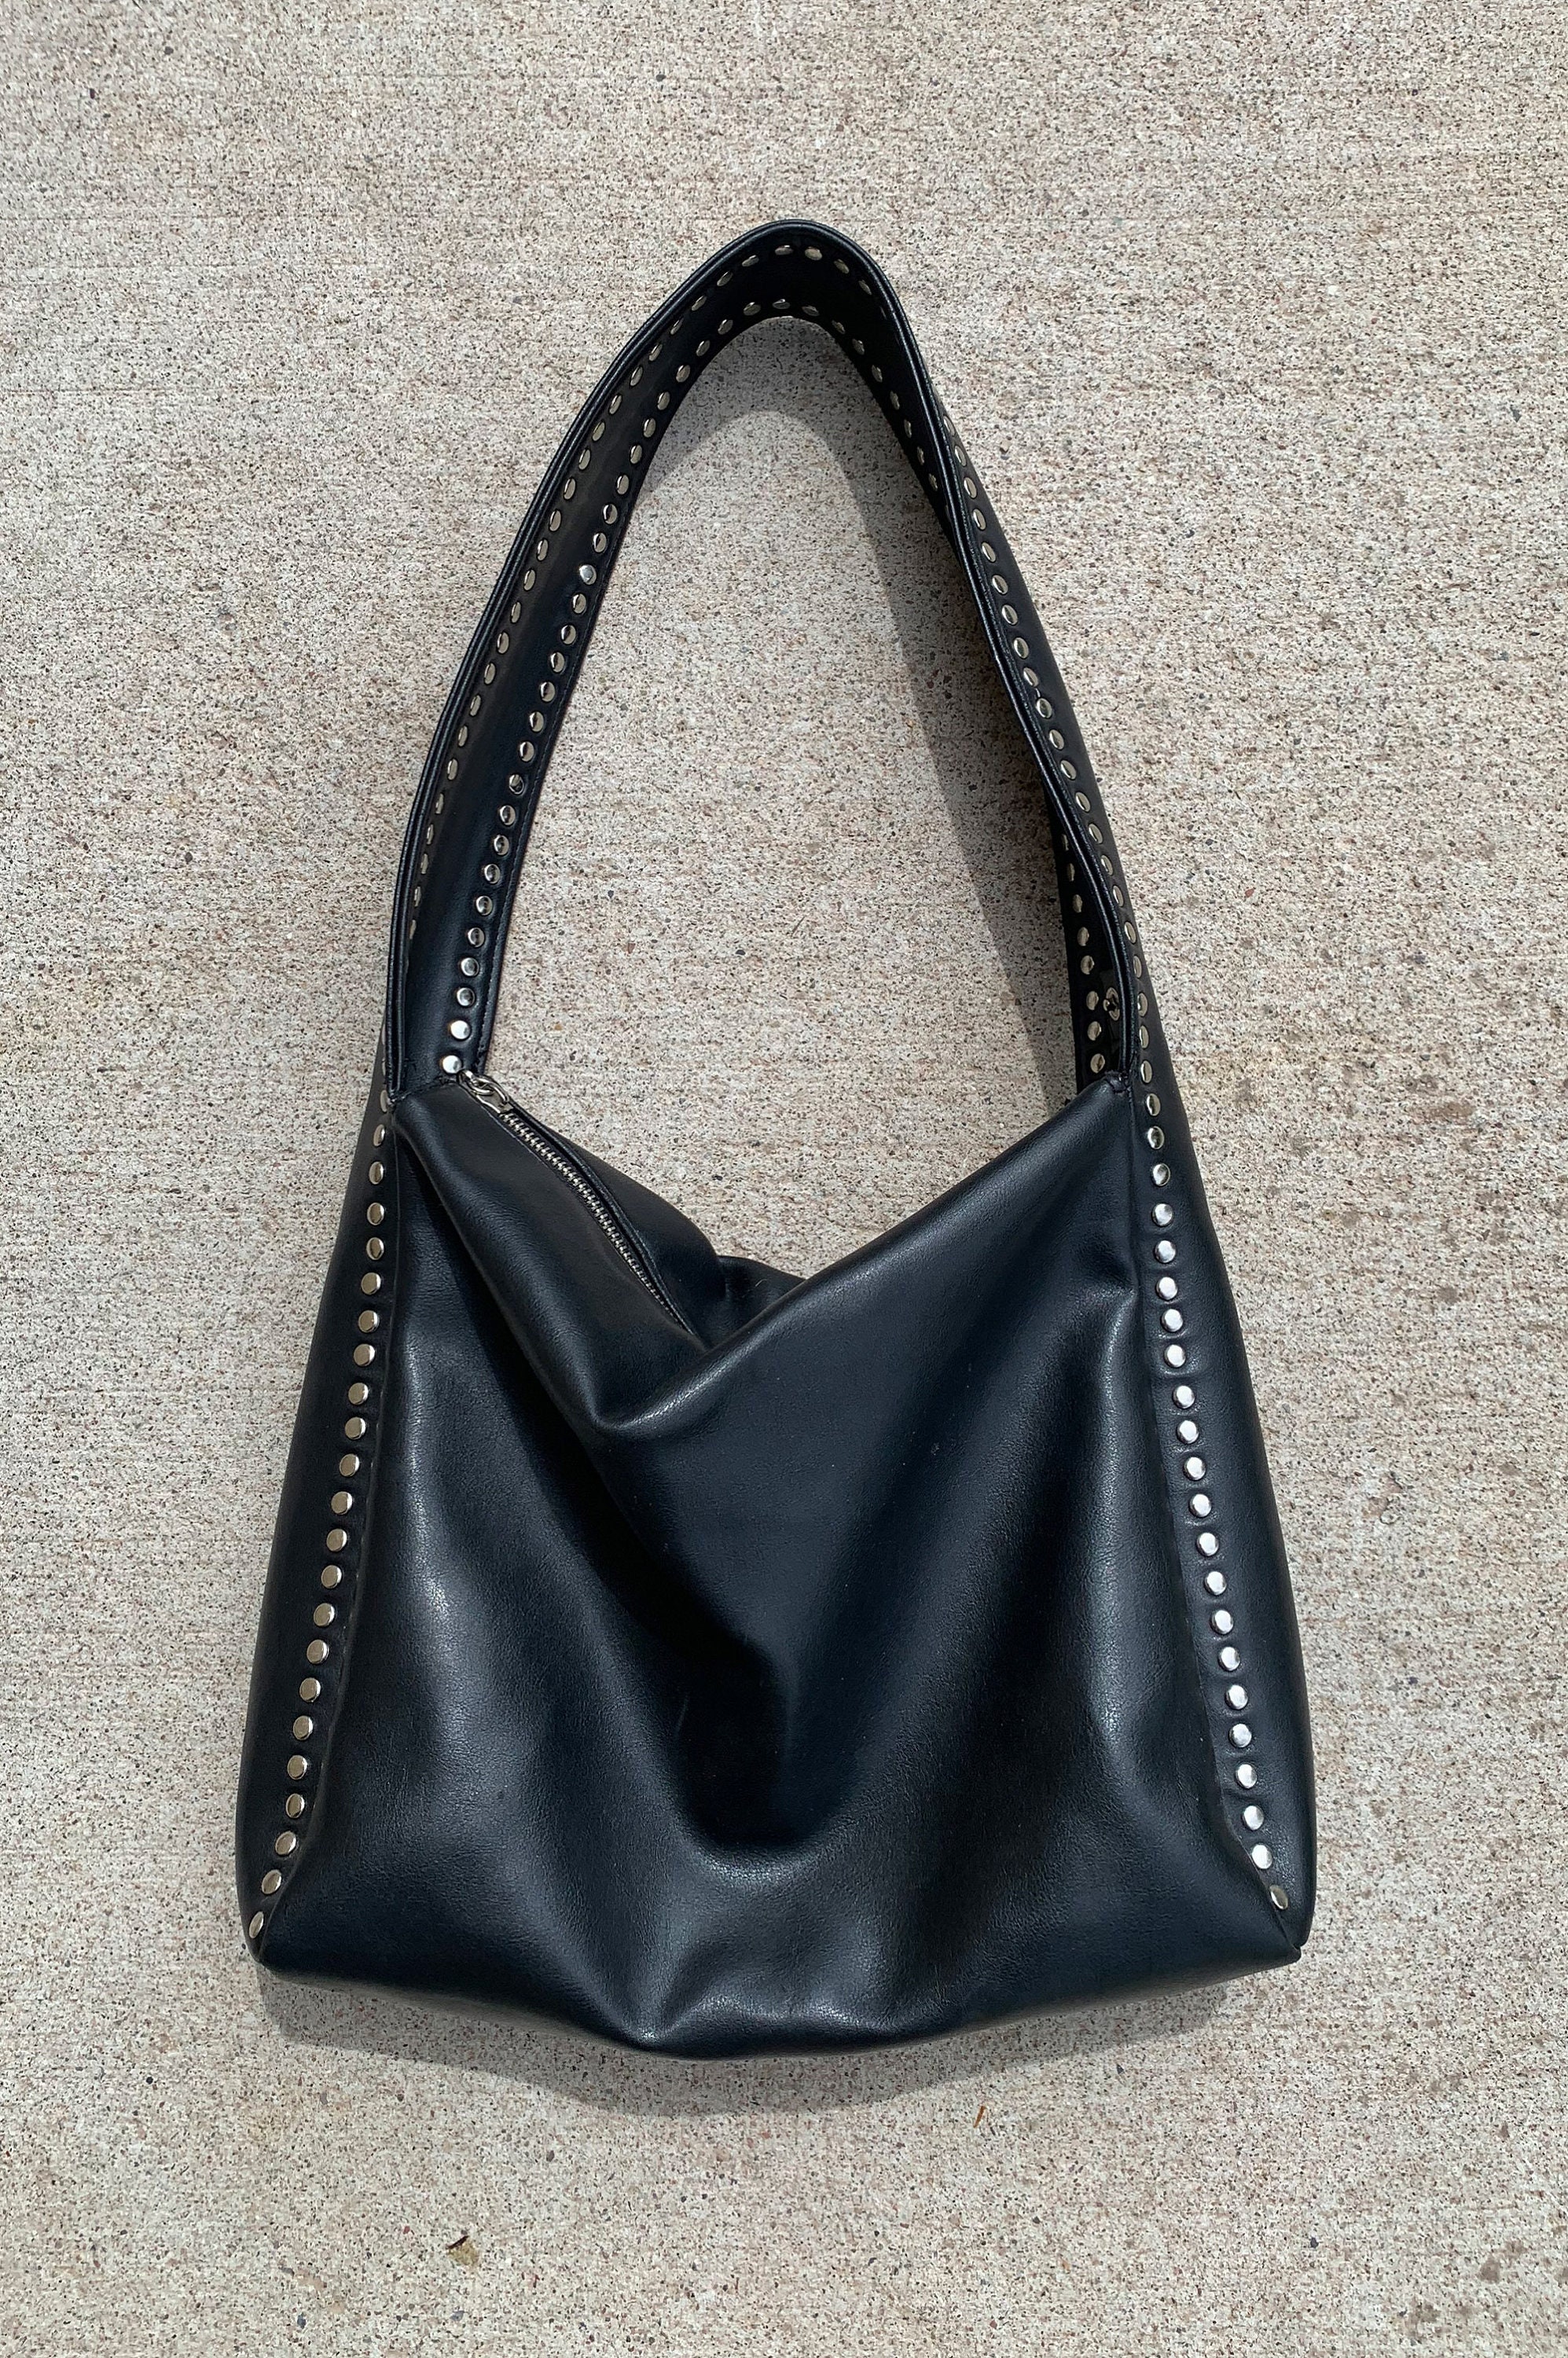 bd babeed Designer Paris Black Leather Gold Studded Shoulder Bag MSRP $395  | eBay